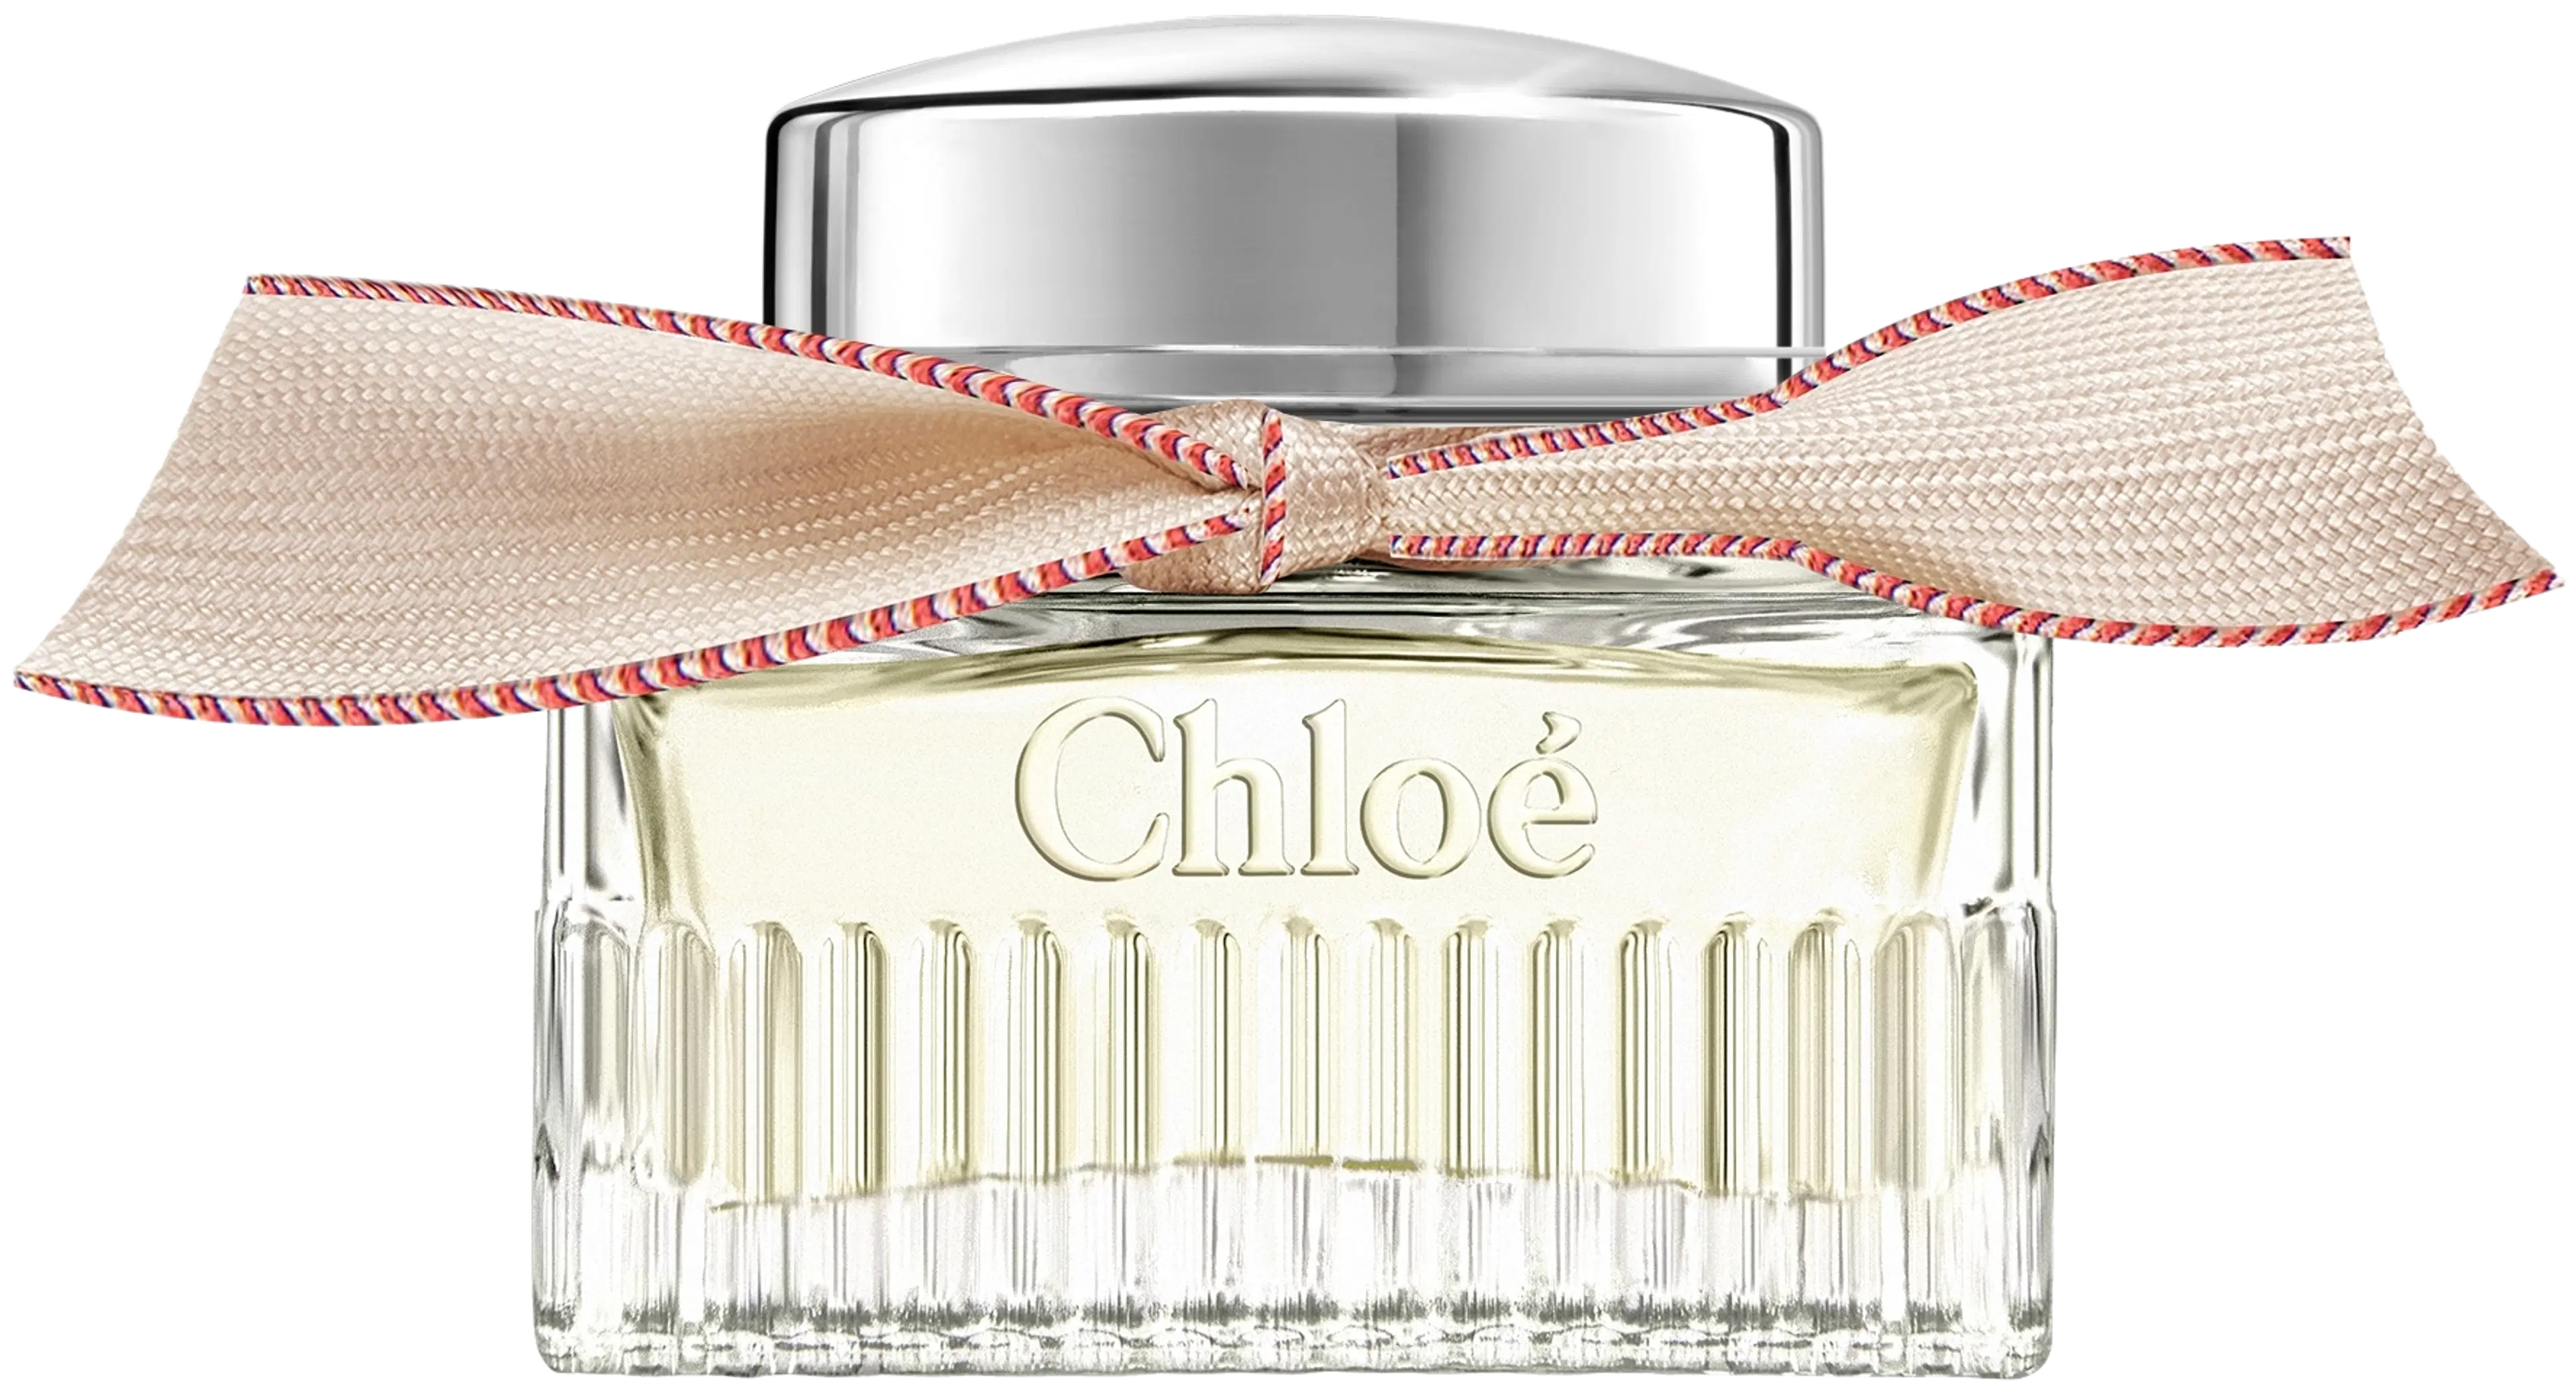 Chloé Signature EdP Lumineuse -tuoksu 30 ml